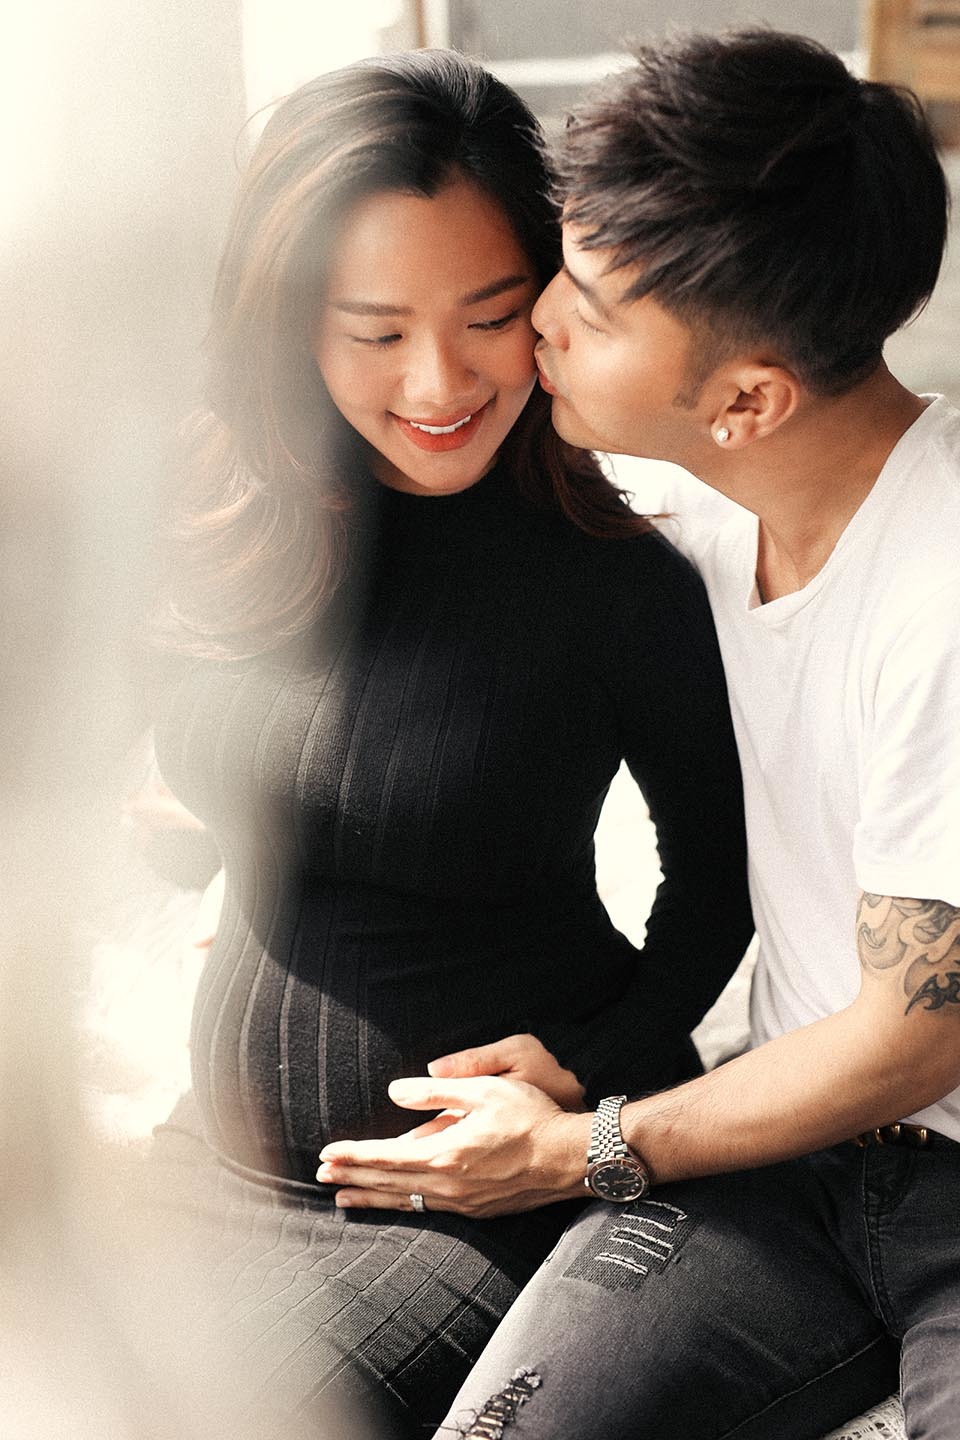  
Kim Cương - Ưng Hoàng Phúc cũng có những shoot hình như vừa cắt ra từ ảnh tạp chí. Dù đang mang thai nhưng Kim Cương vẫn vô cùng xinh đẹp, dịu dàng. (Ảnh: FBNV)